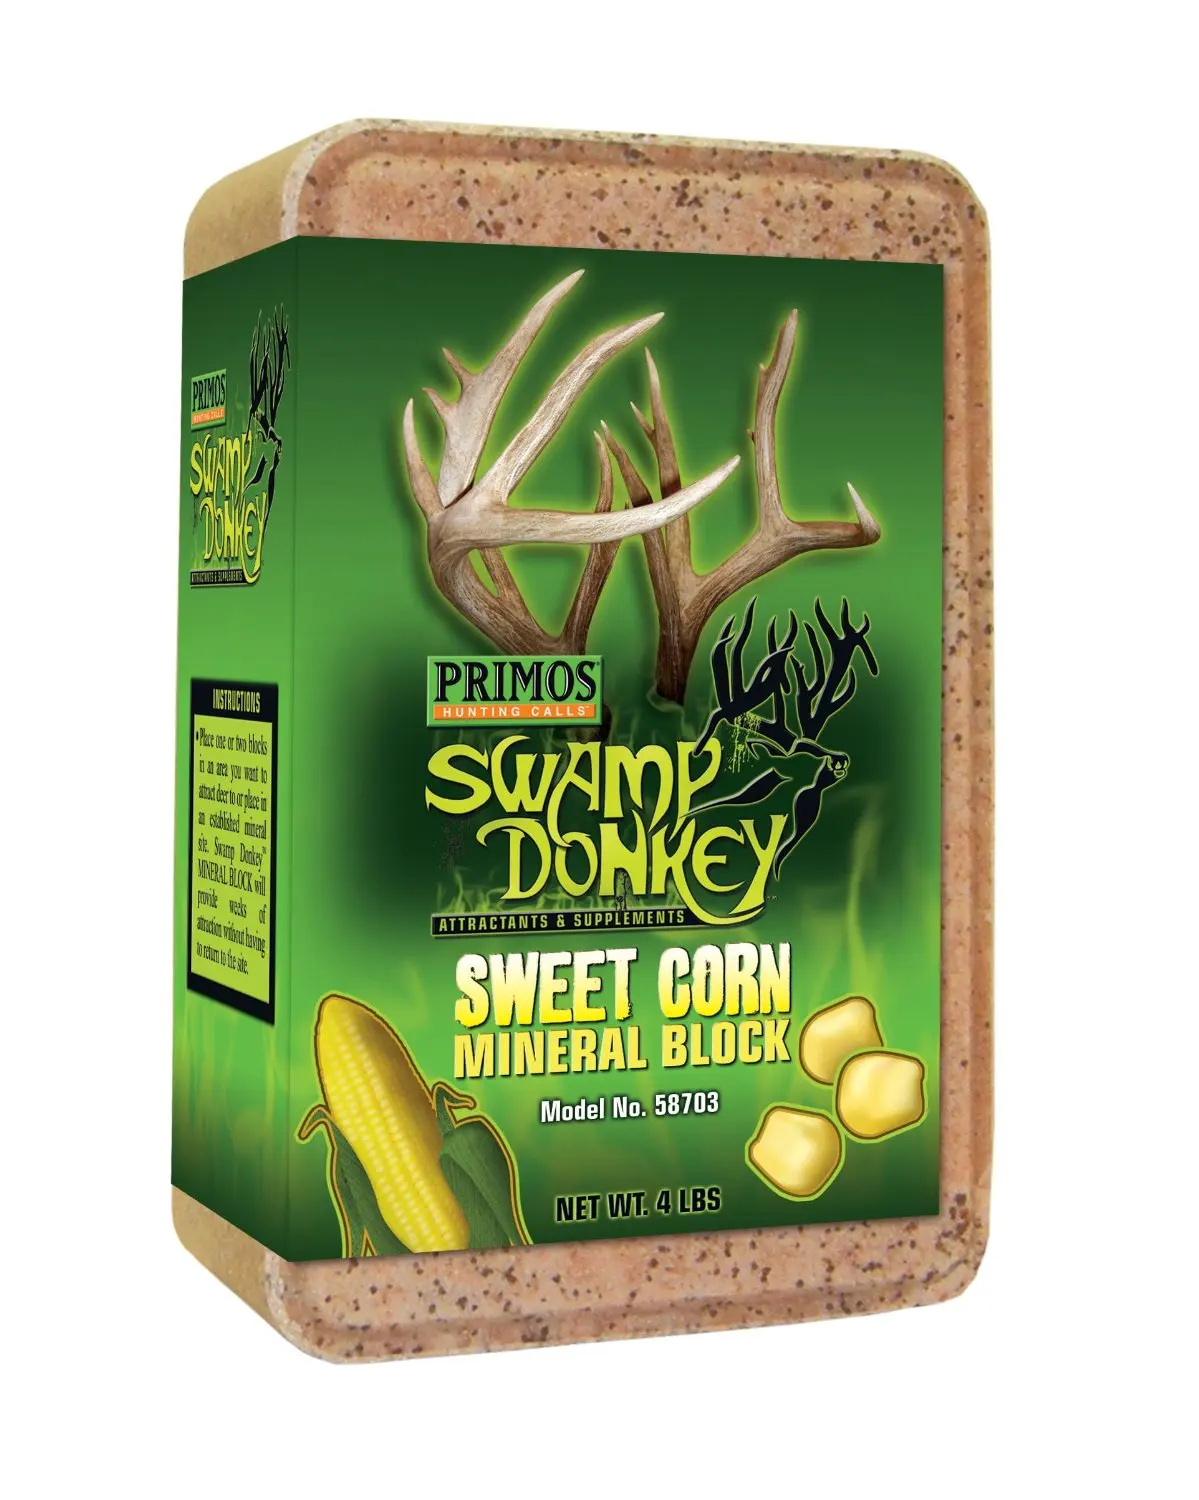 Mineral lick for deer